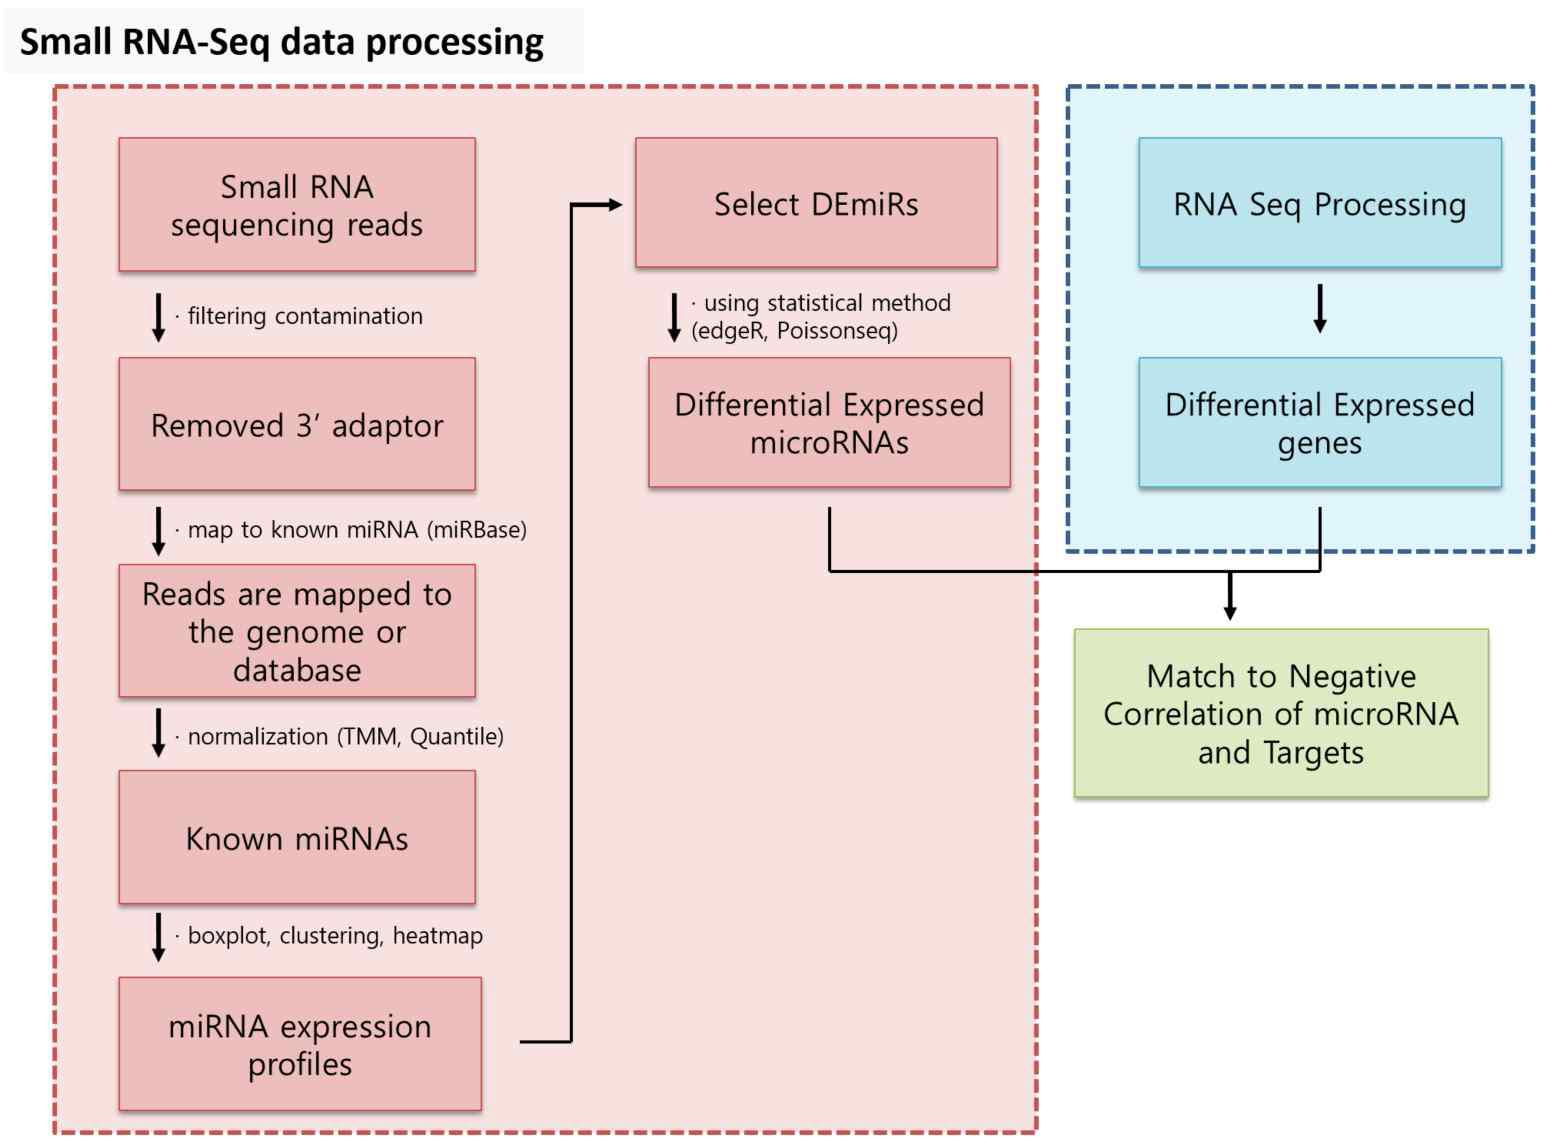 miRNA-Seq 데이터 분석을 위한 파이프라인 요약도